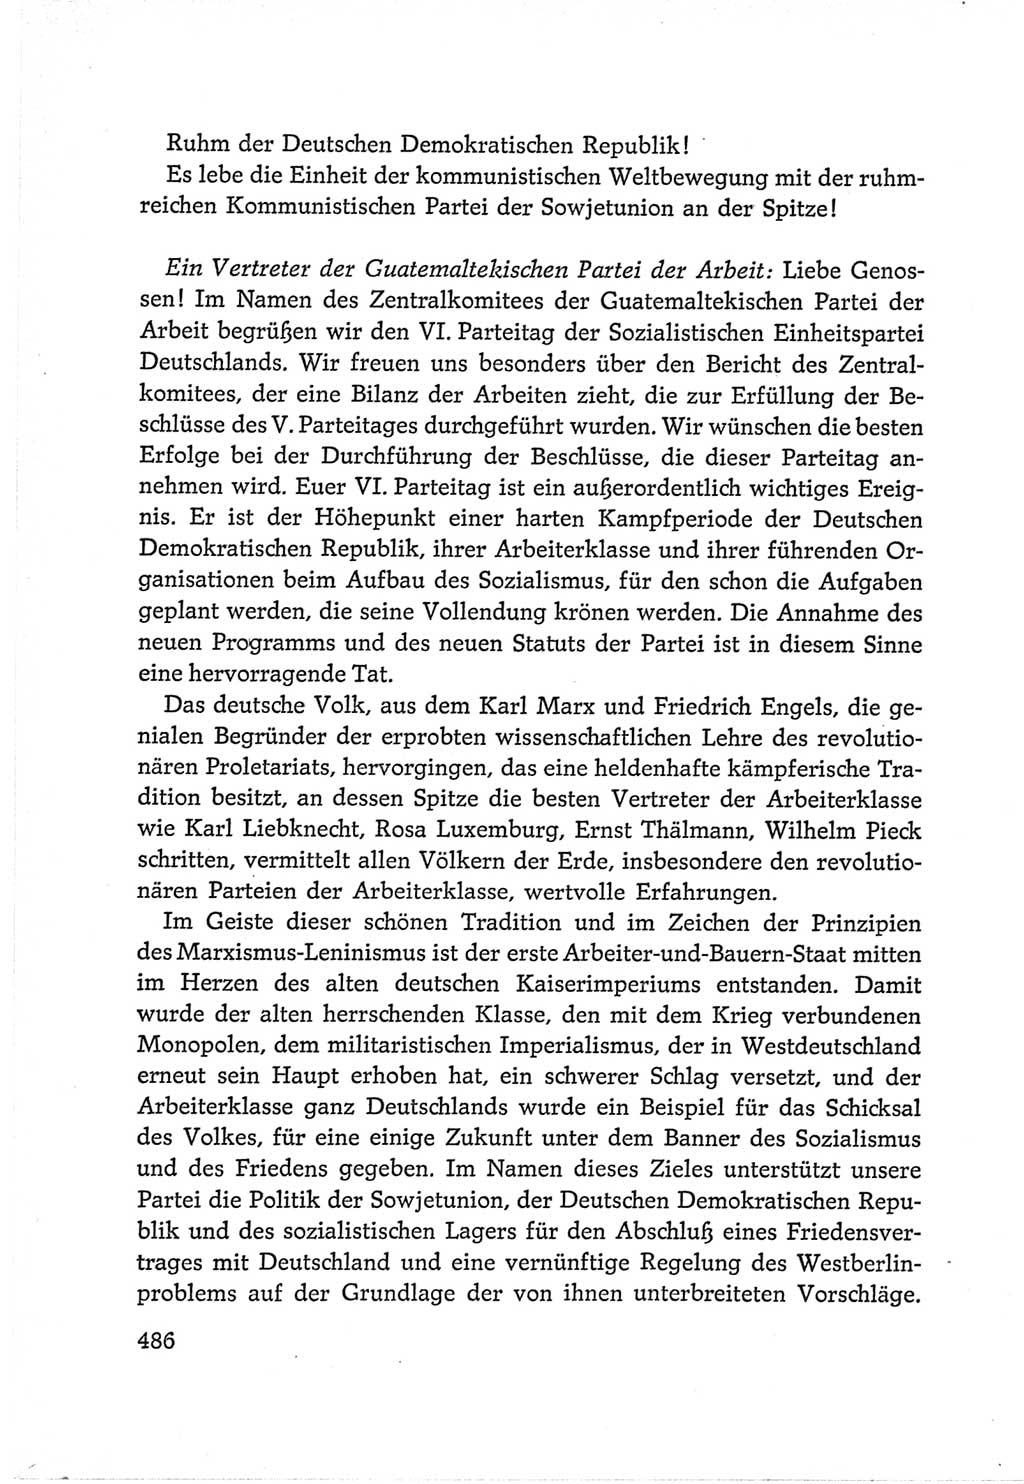 Protokoll der Verhandlungen des Ⅵ. Parteitages der Sozialistischen Einheitspartei Deutschlands (SED) [Deutsche Demokratische Republik (DDR)] 1963, Band Ⅱ, Seite 486 (Prot. Verh. Ⅵ. PT SED DDR 1963, Bd. Ⅱ, S. 486)